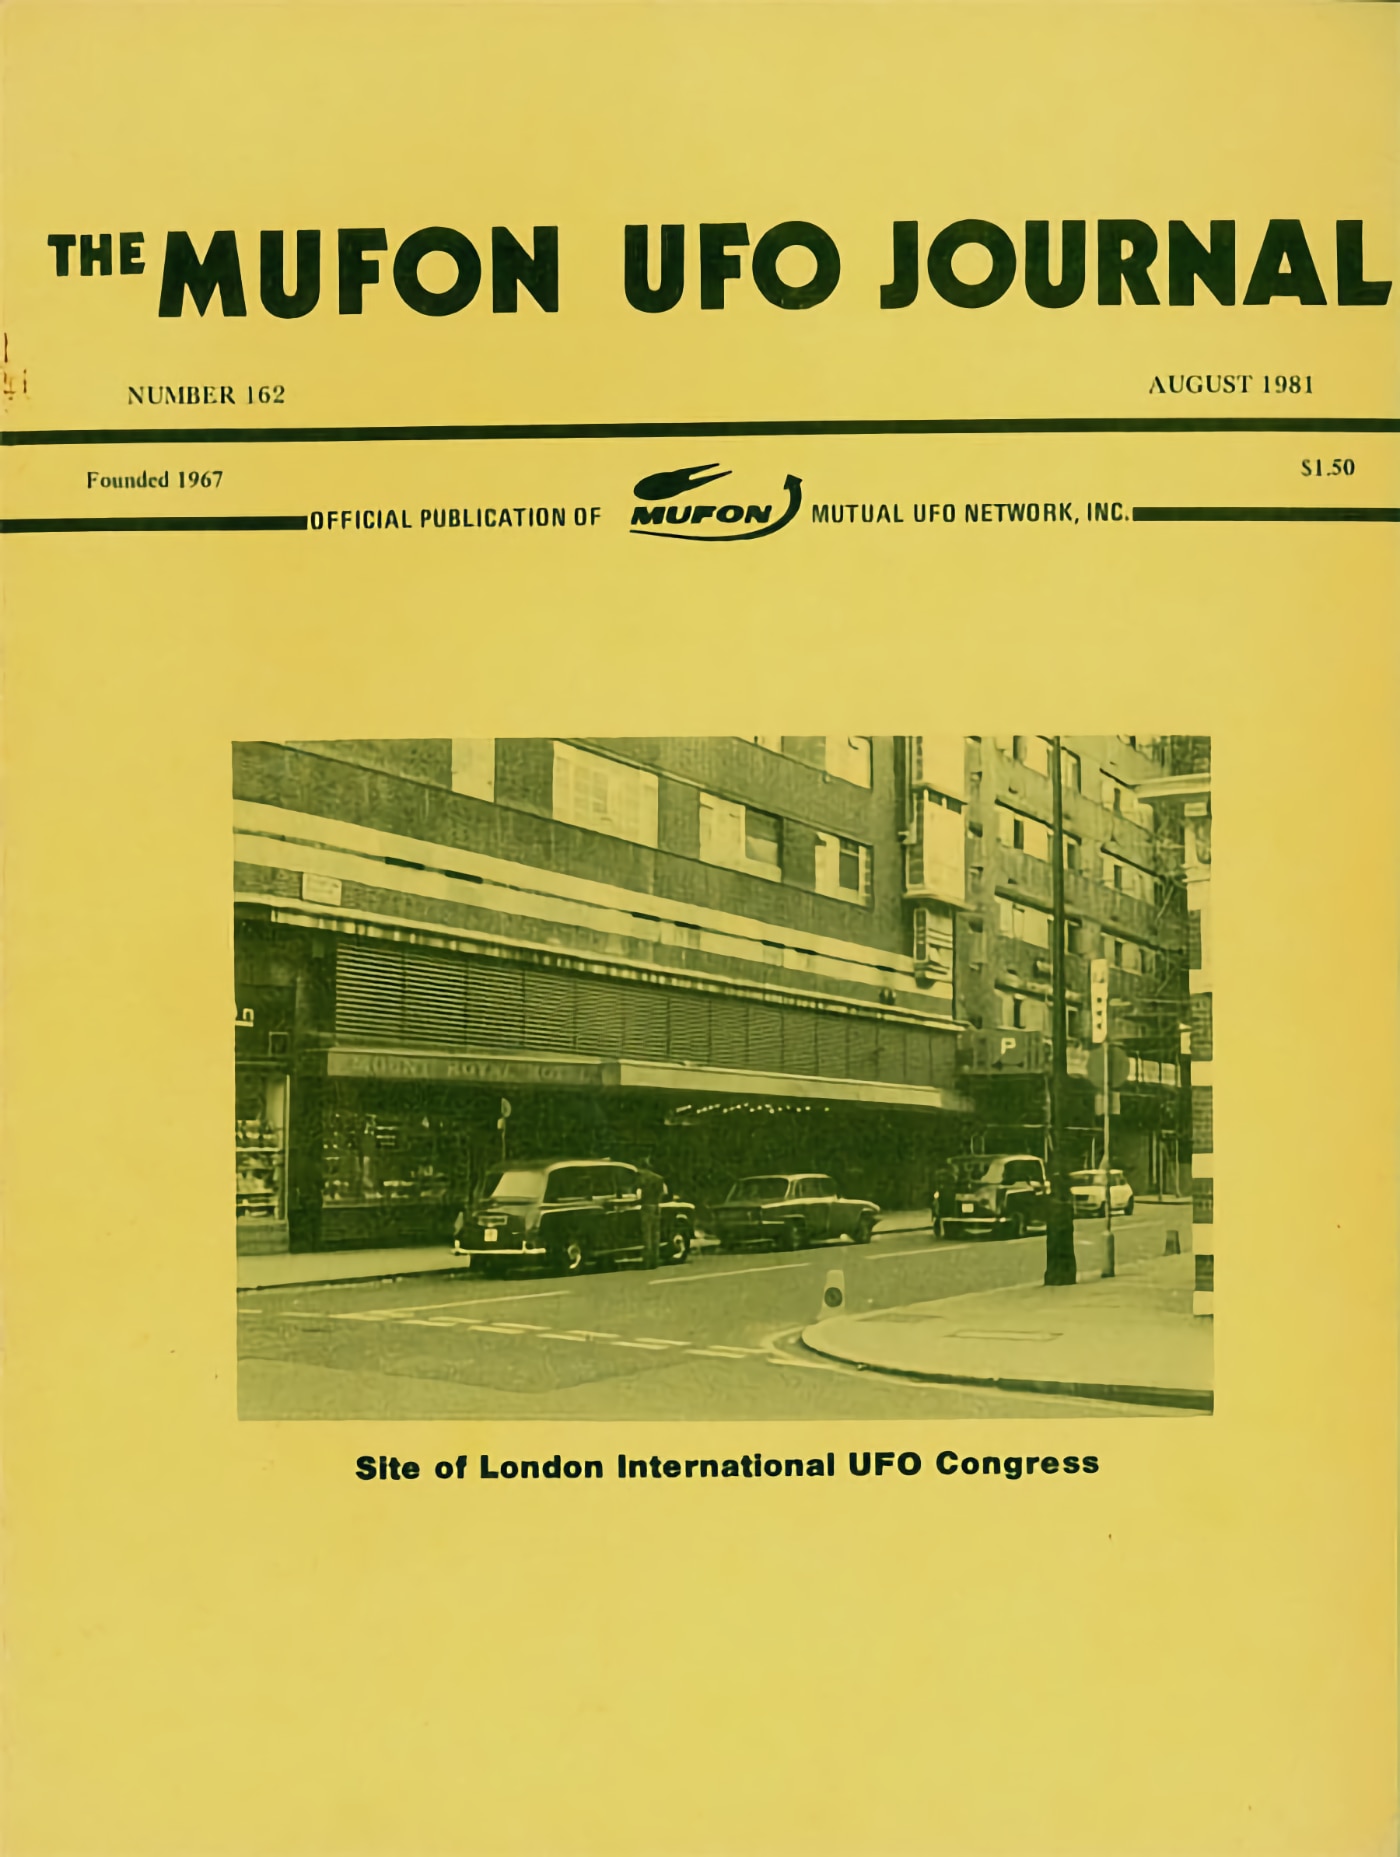 Portada del número de 'The MUFON Ufo Journal' que incluía el artículo sobre visiones hipnagógicas e hipnopómpicas.